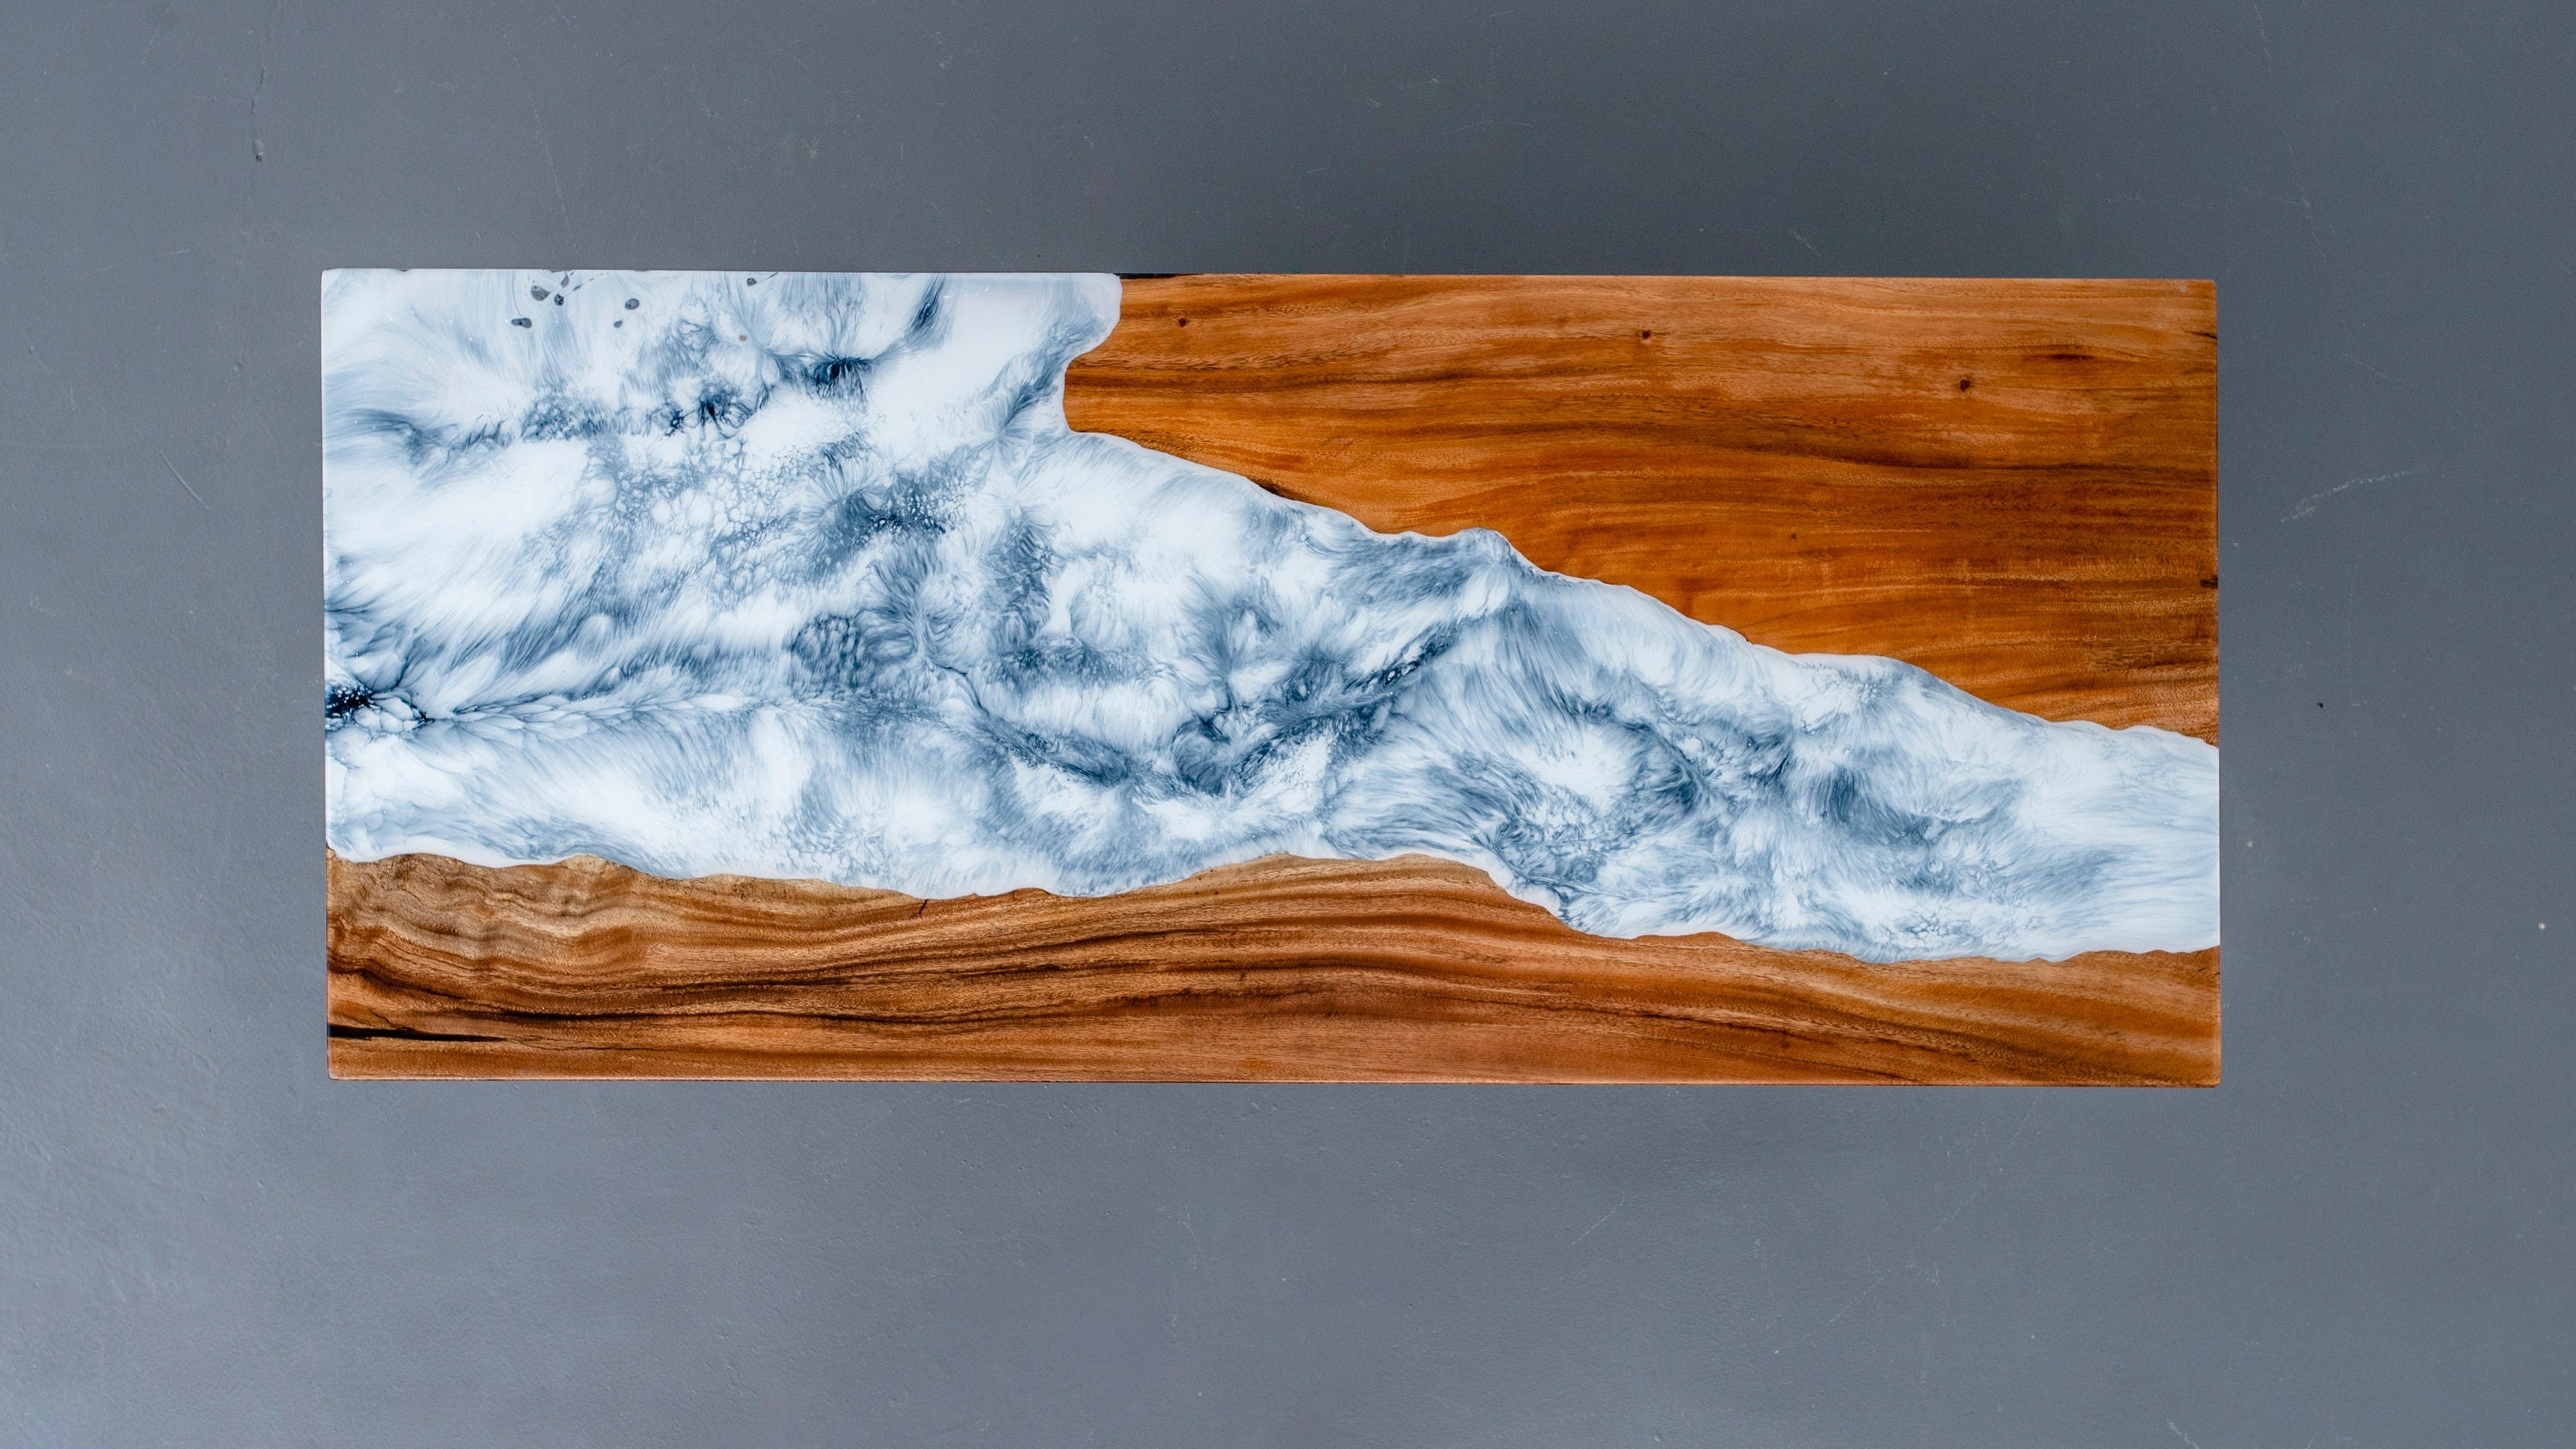 Tavolo epossidico fiocco di neve, tavolo in resina epossidica bianca, tavolo da pranzo Snow, tavolo in legno naturale